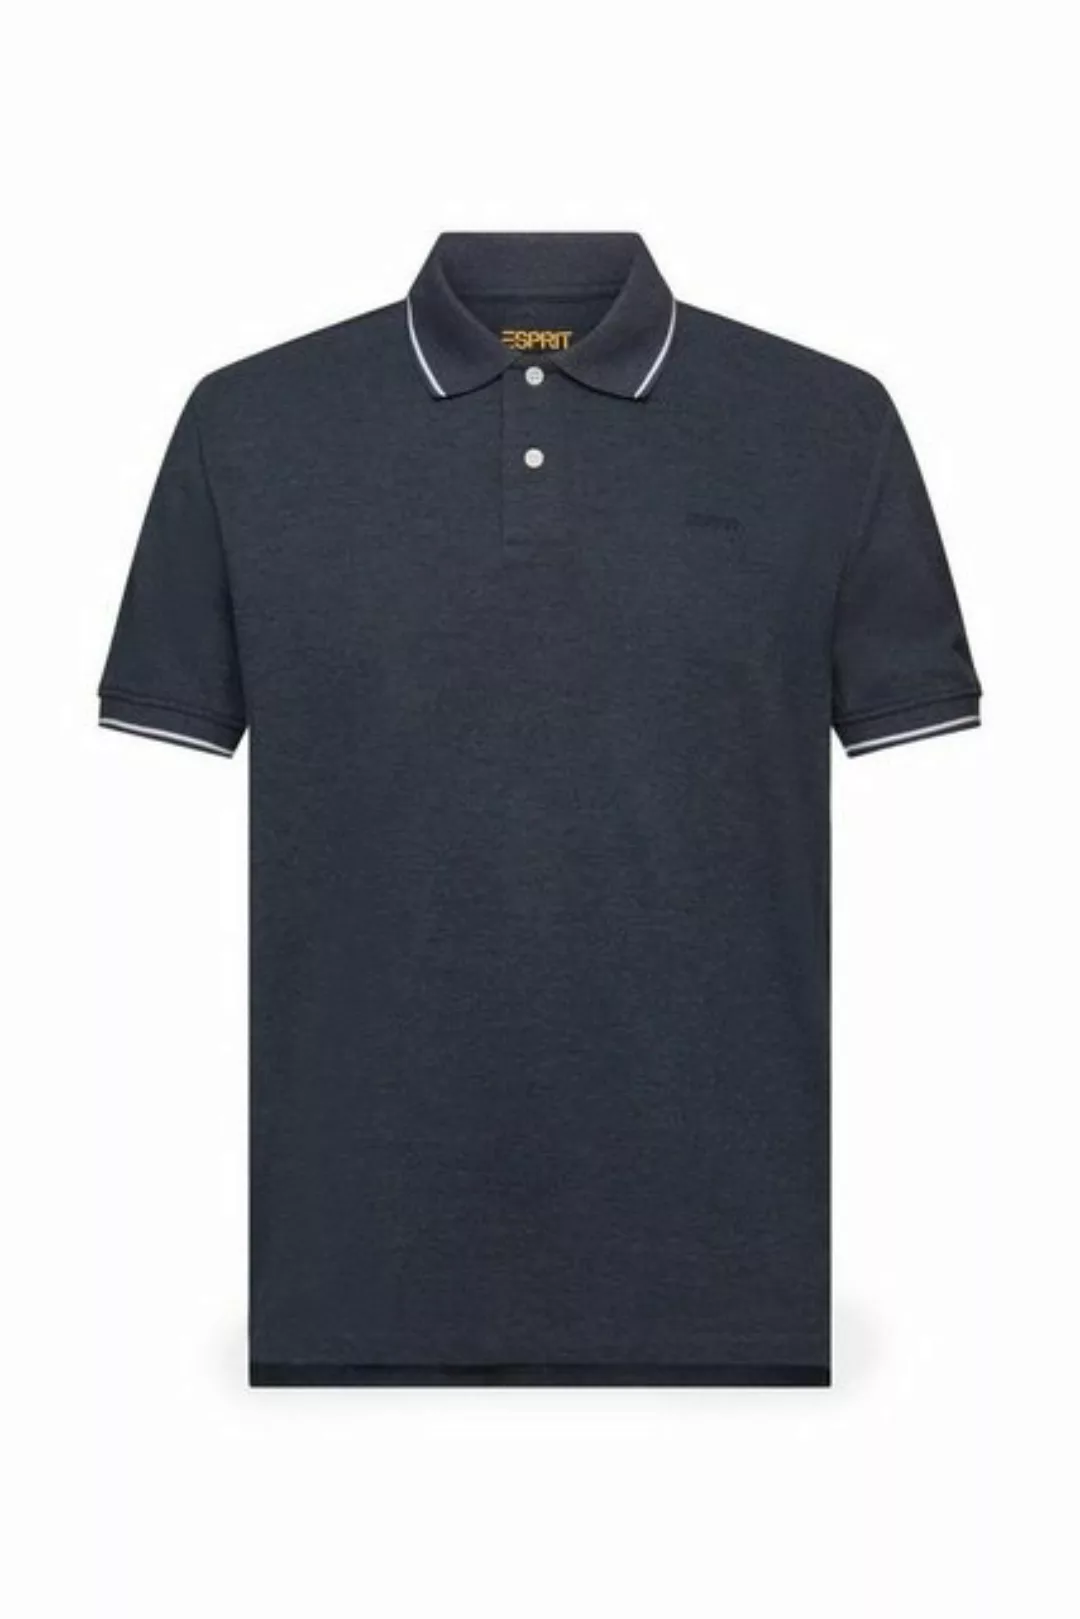 Esprit T-Shirt Polo shirts günstig online kaufen